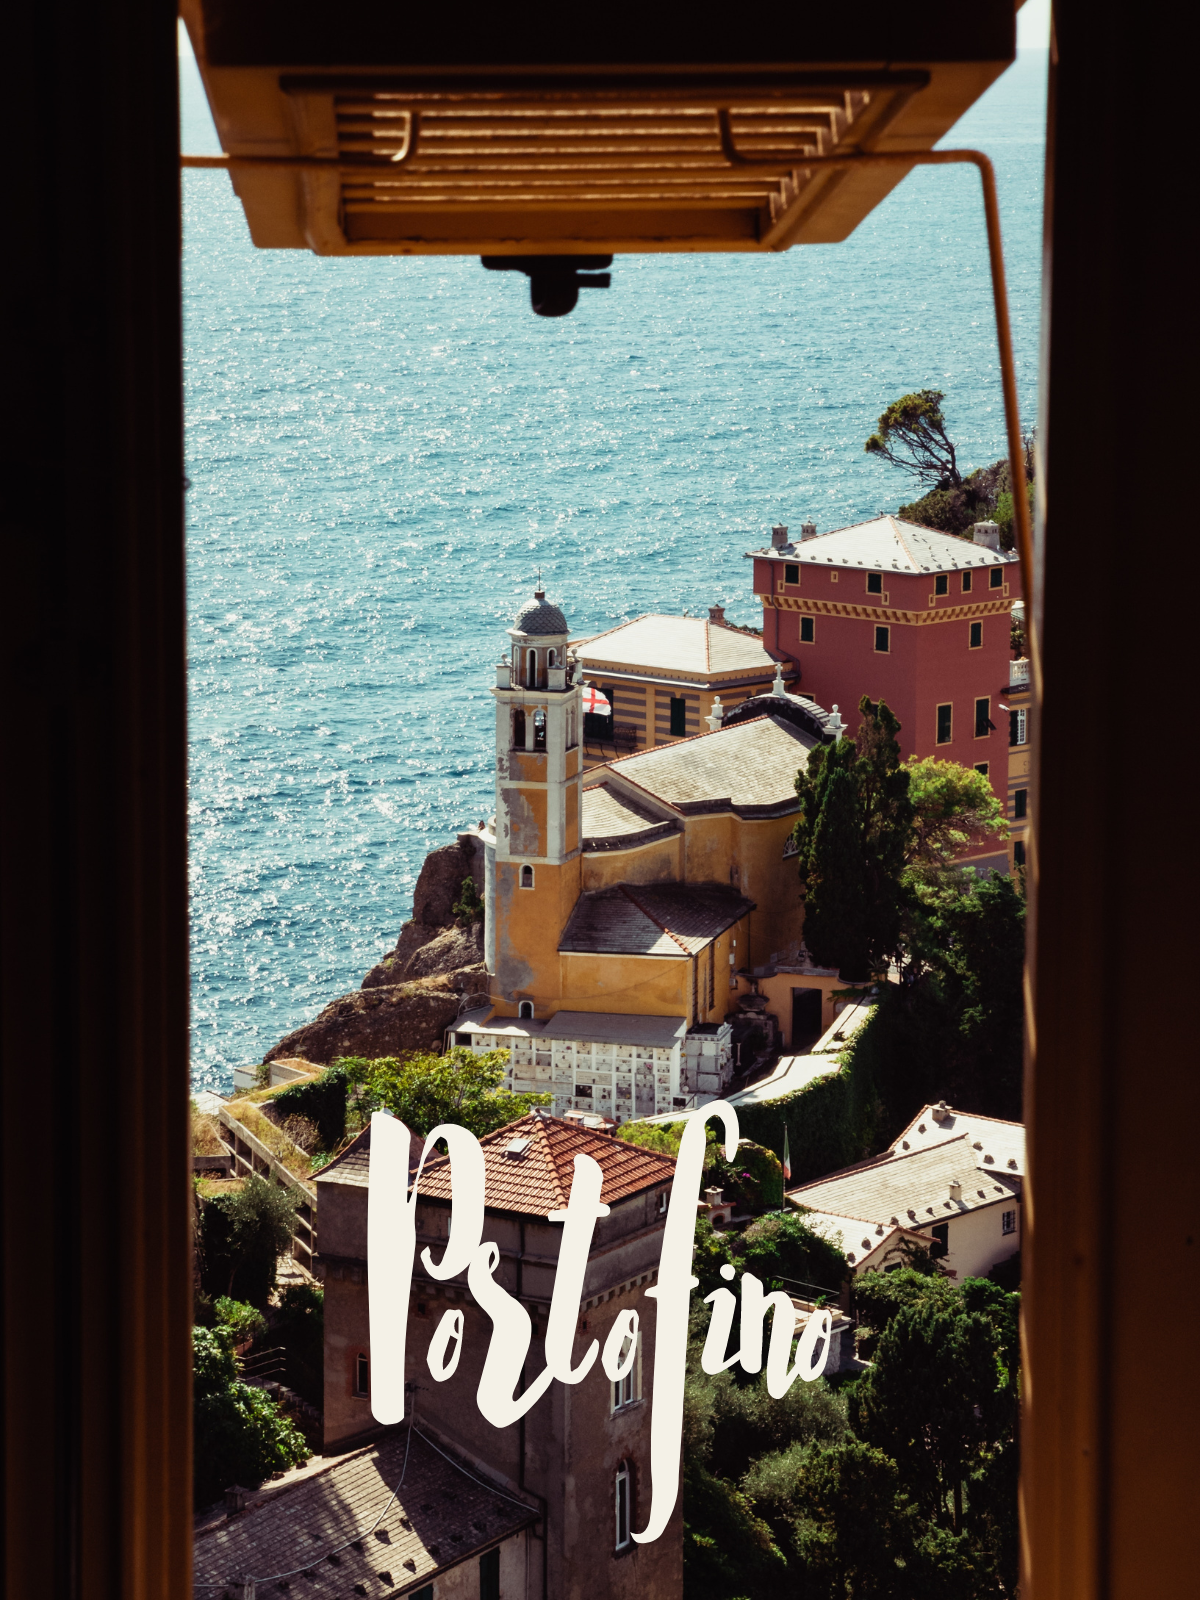 Portofino: Dove la semplicità incontra lo splendore mediterraneo